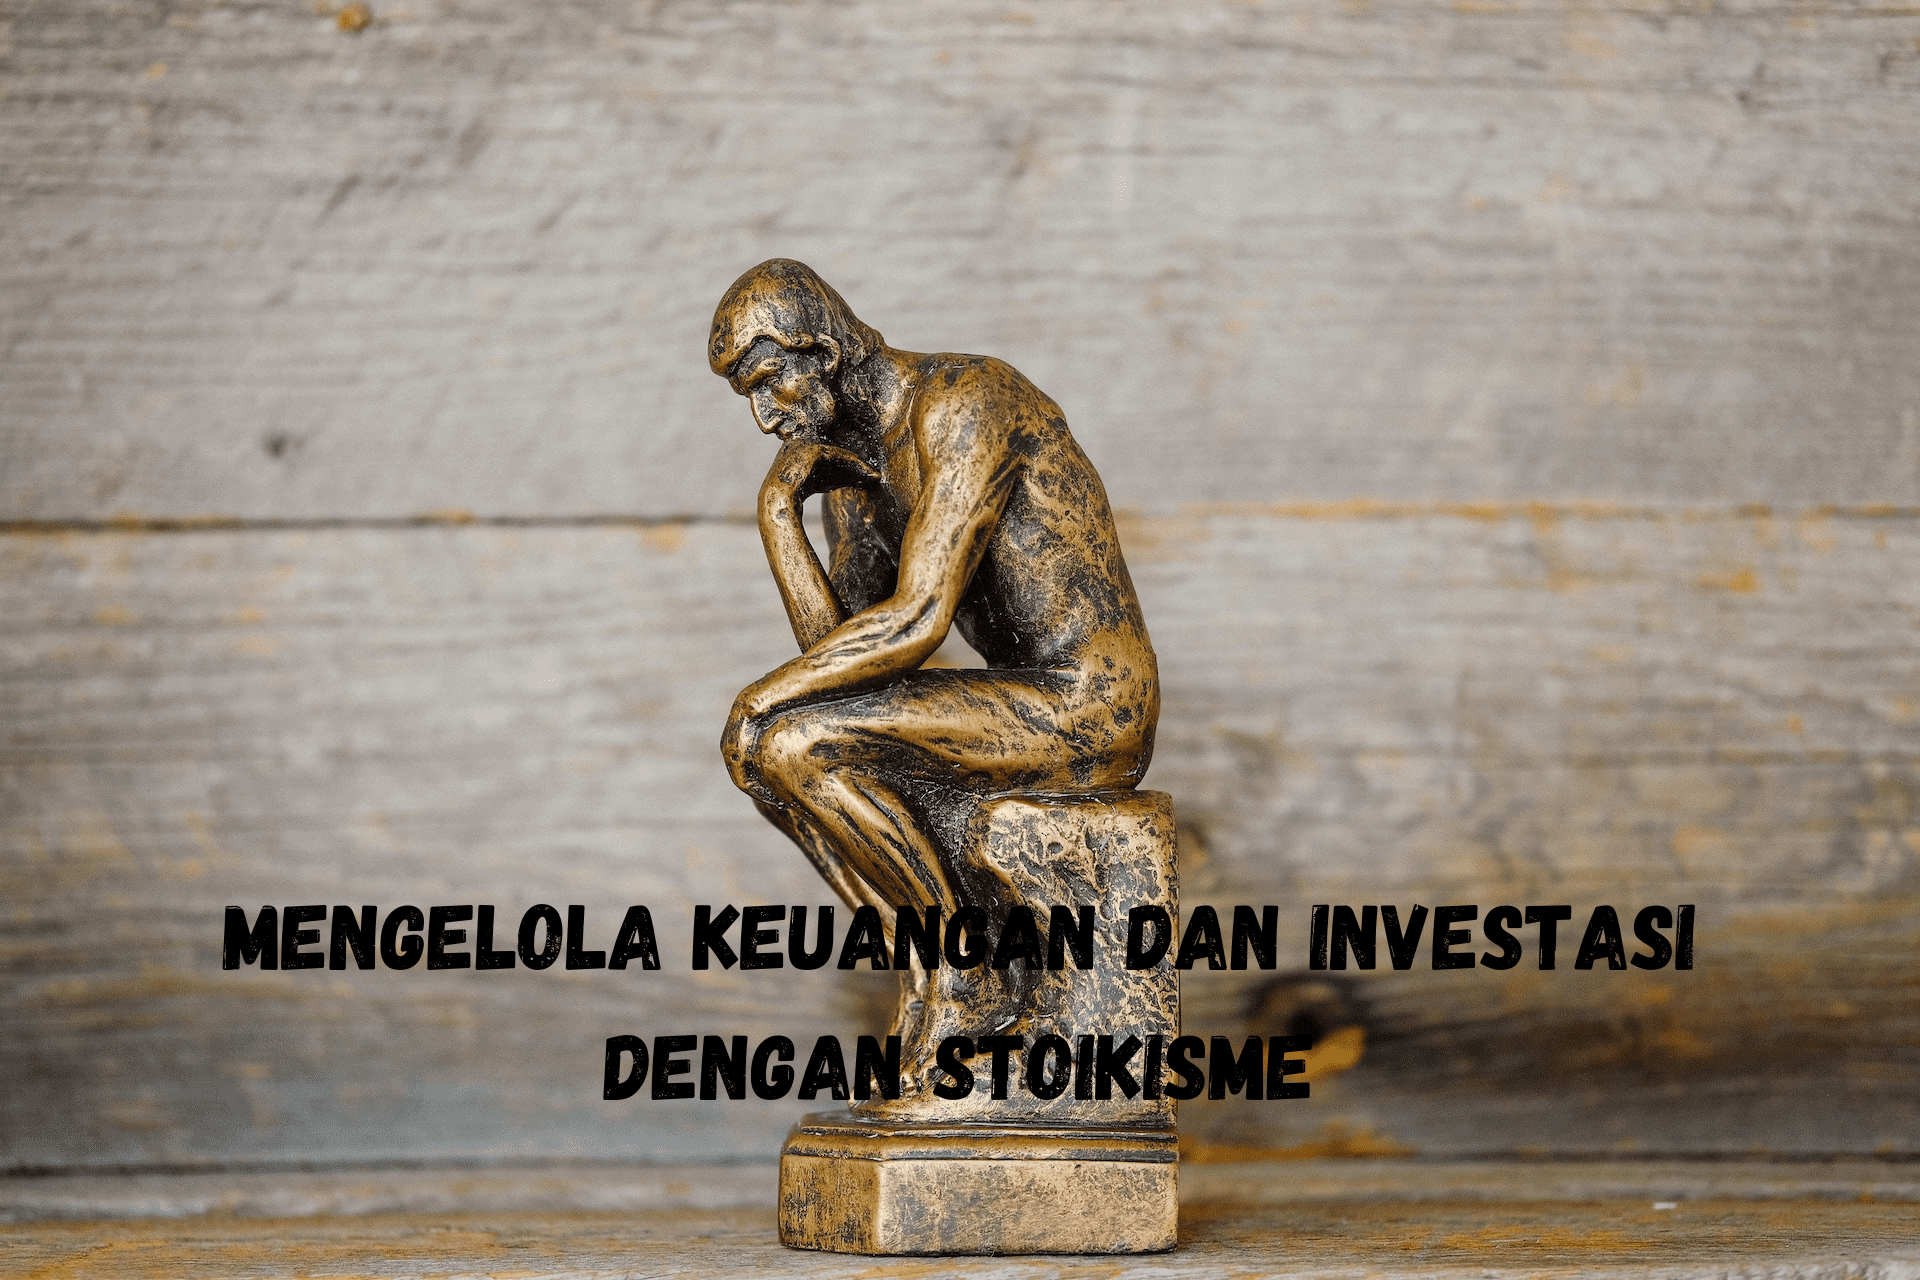 Mengelola Keuangan dan Investasi dengan Stoikisme